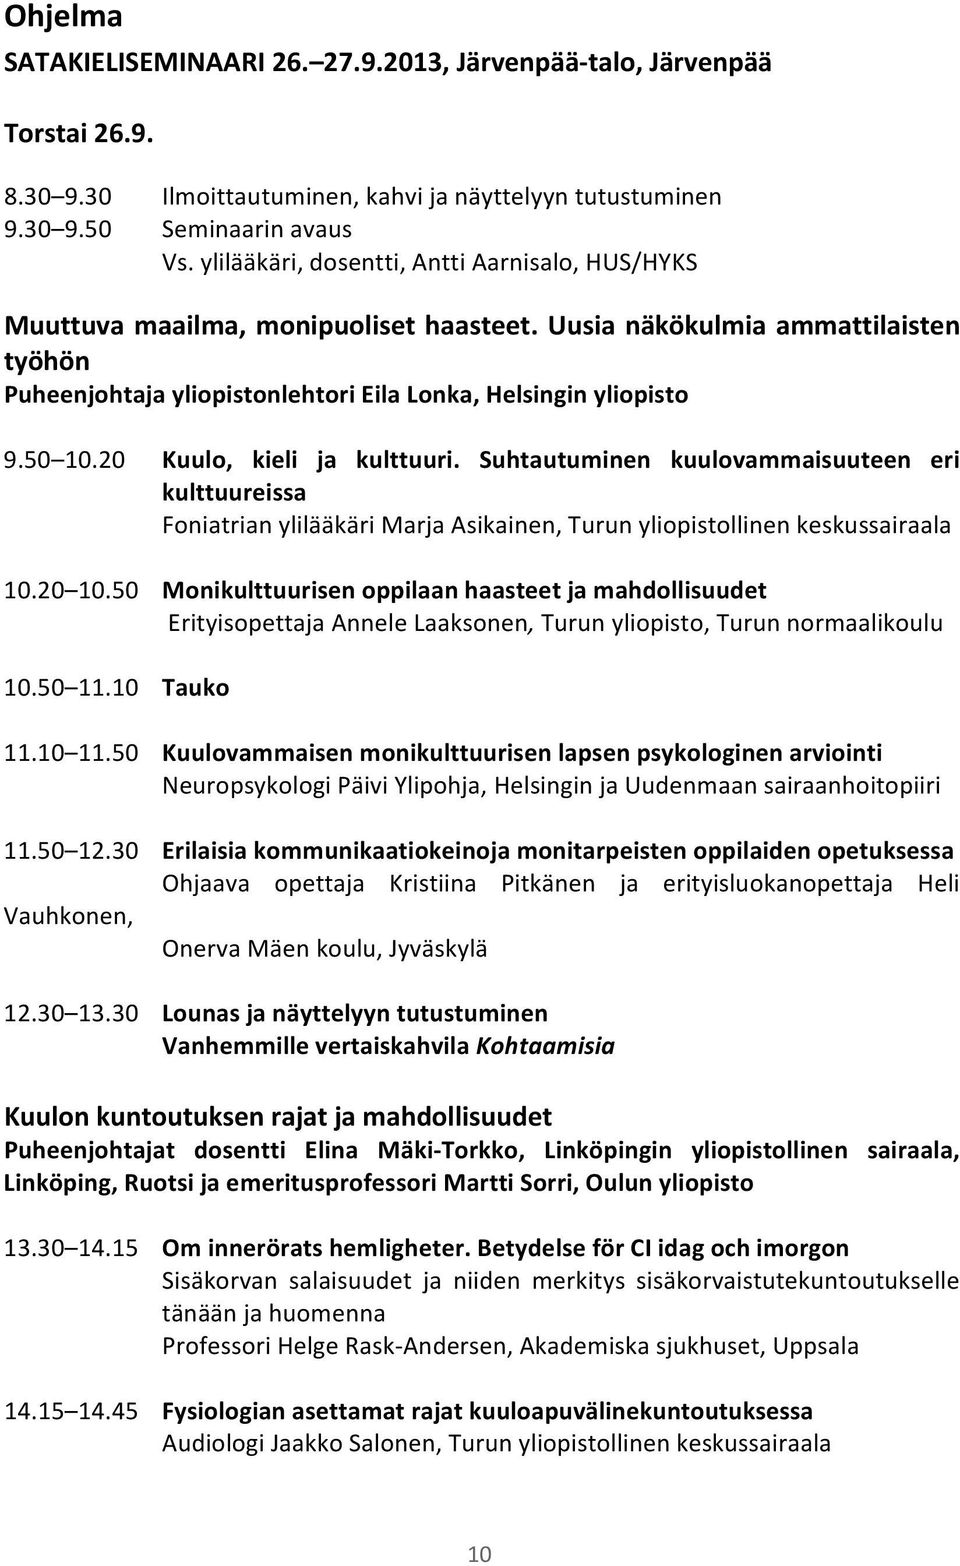 20 Kuulo, kieli ja kulttuuri. Suhtautuminen kuulovammaisuuteen eri kulttuureissa Foniatrian ylilääkäri Marja Asikainen, Turun yliopistollinen keskussairaala 10.20 10.